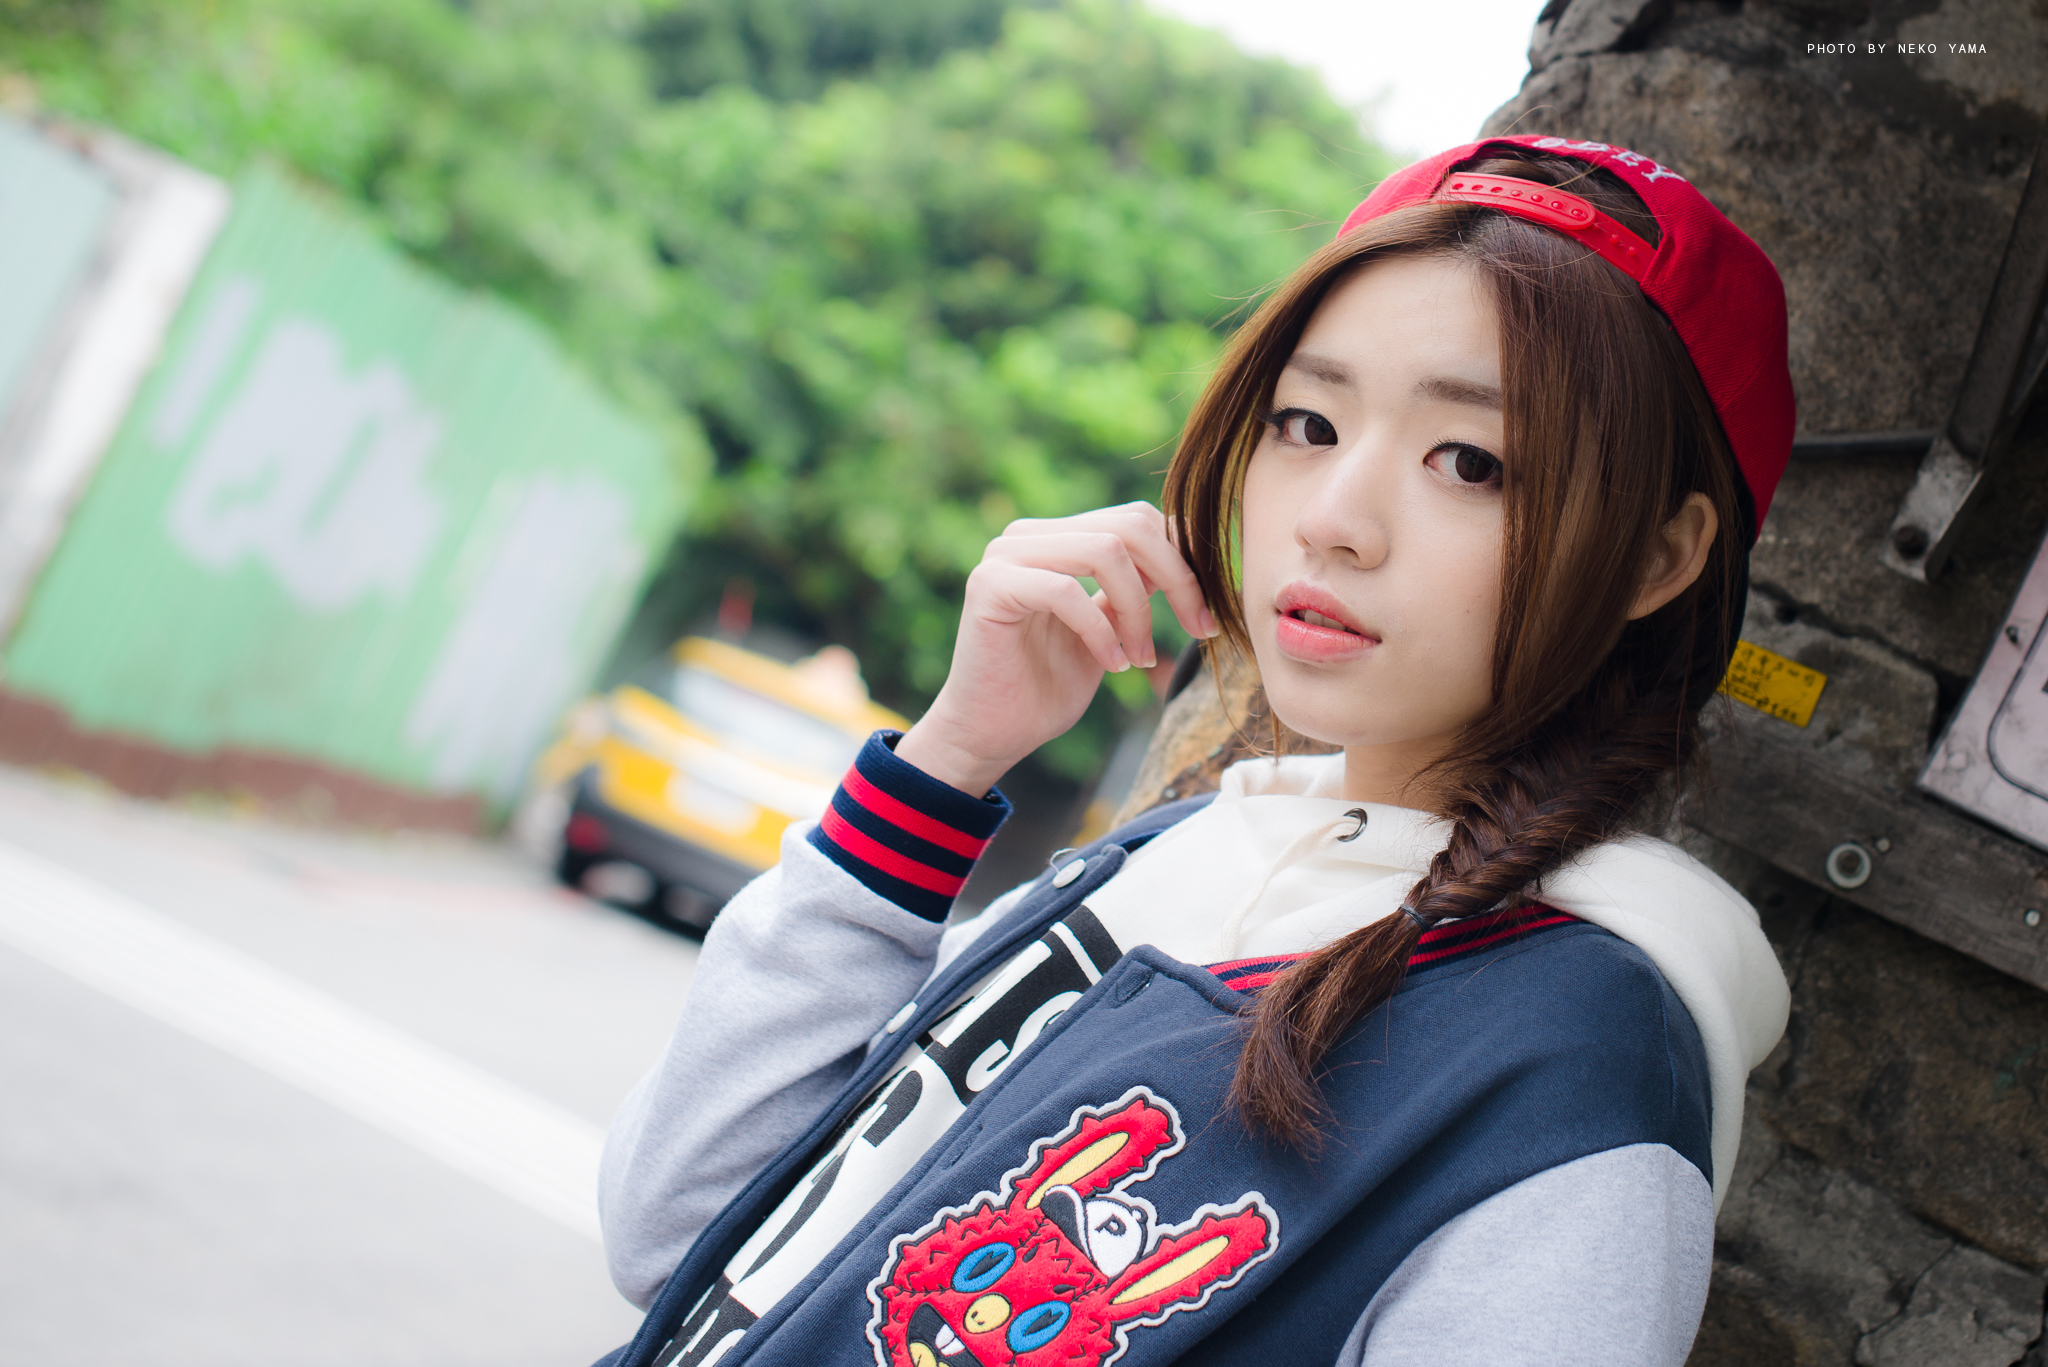 Brunette Women Asian Jacket Sports Cap Braided Hair Street Women Outdoors Looking At Viewer 2048x1367